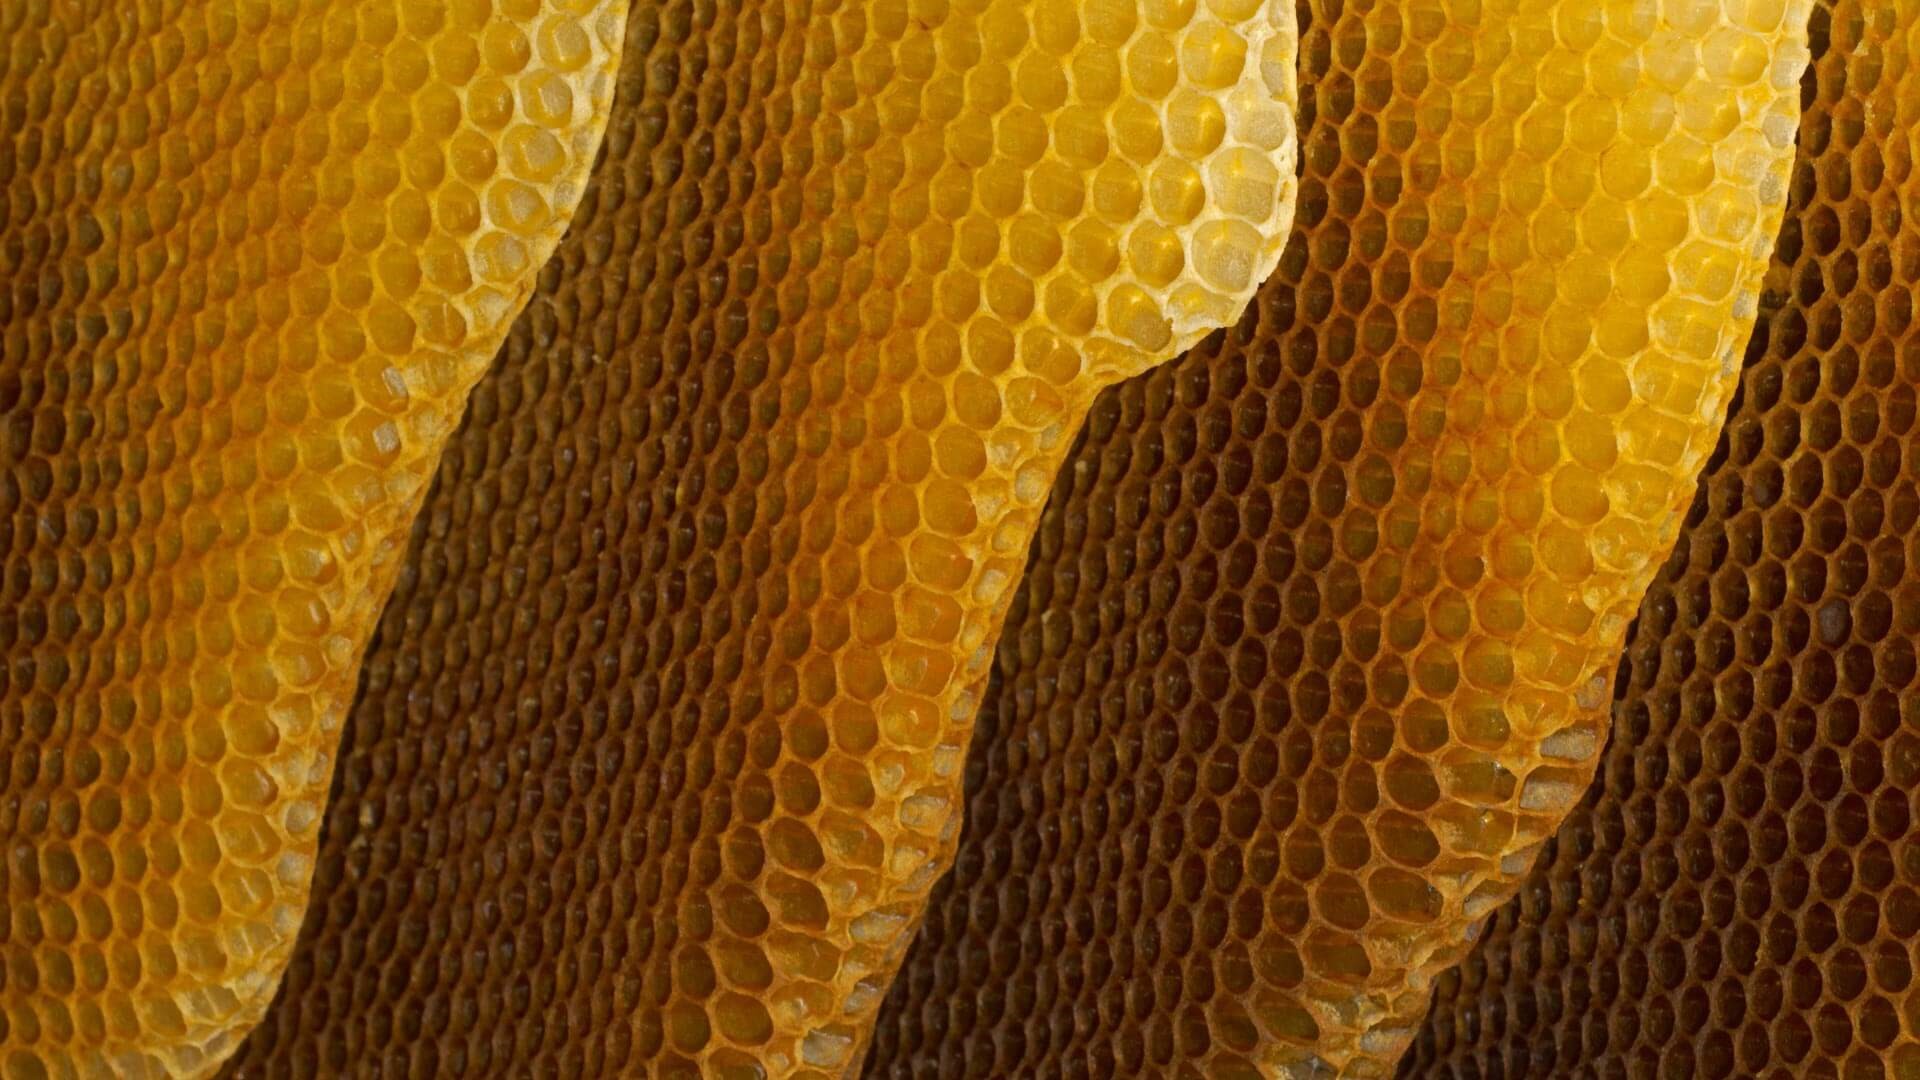 Вид сот. Соты пчелиные. Медовые соты. Соты меда. Соты натуральные.